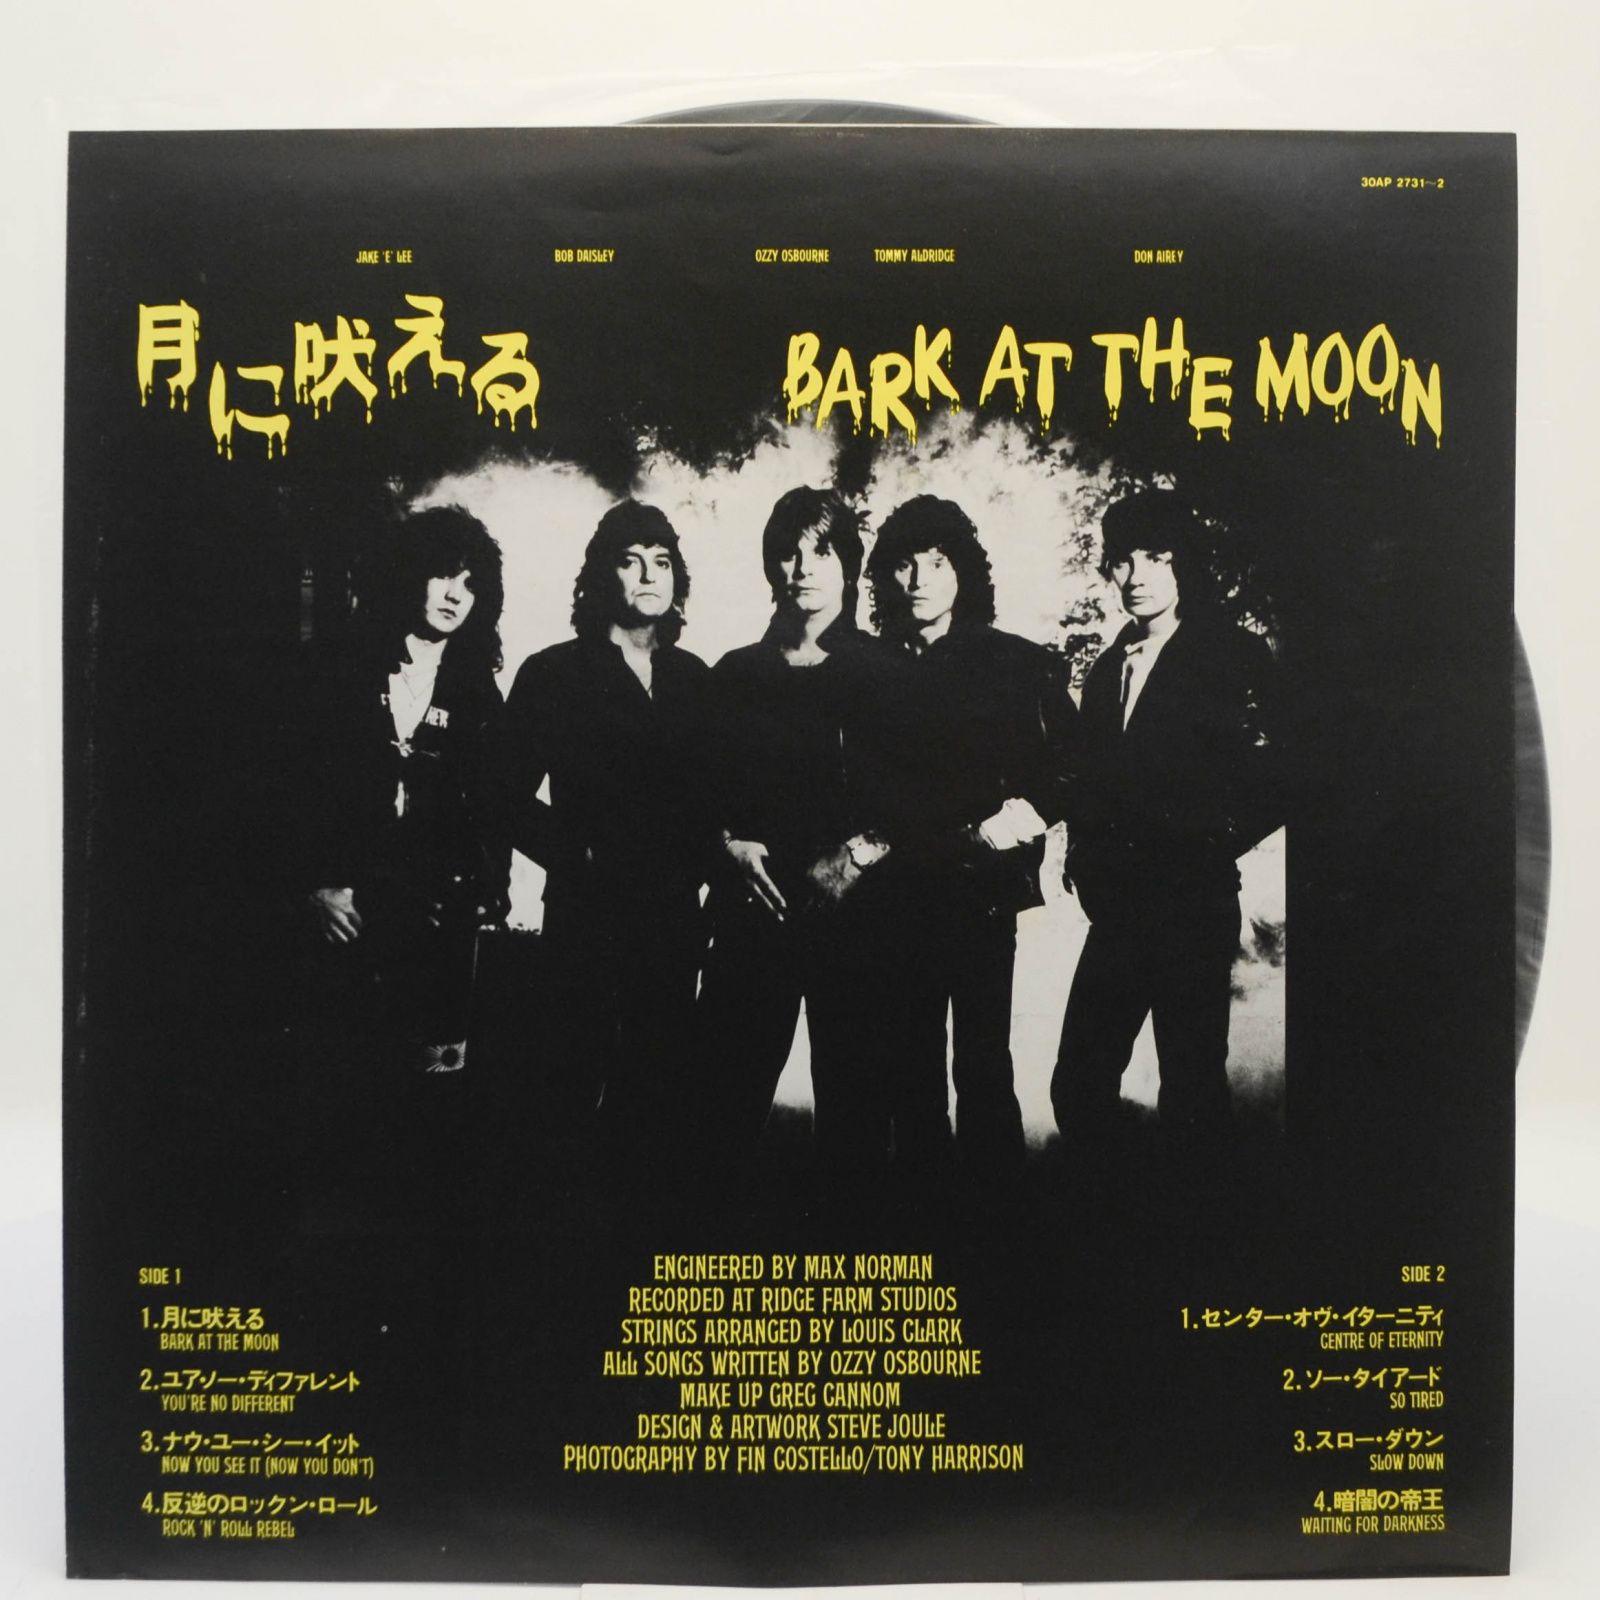 Ozzy Osbourne — Bark At The Moon, 1983